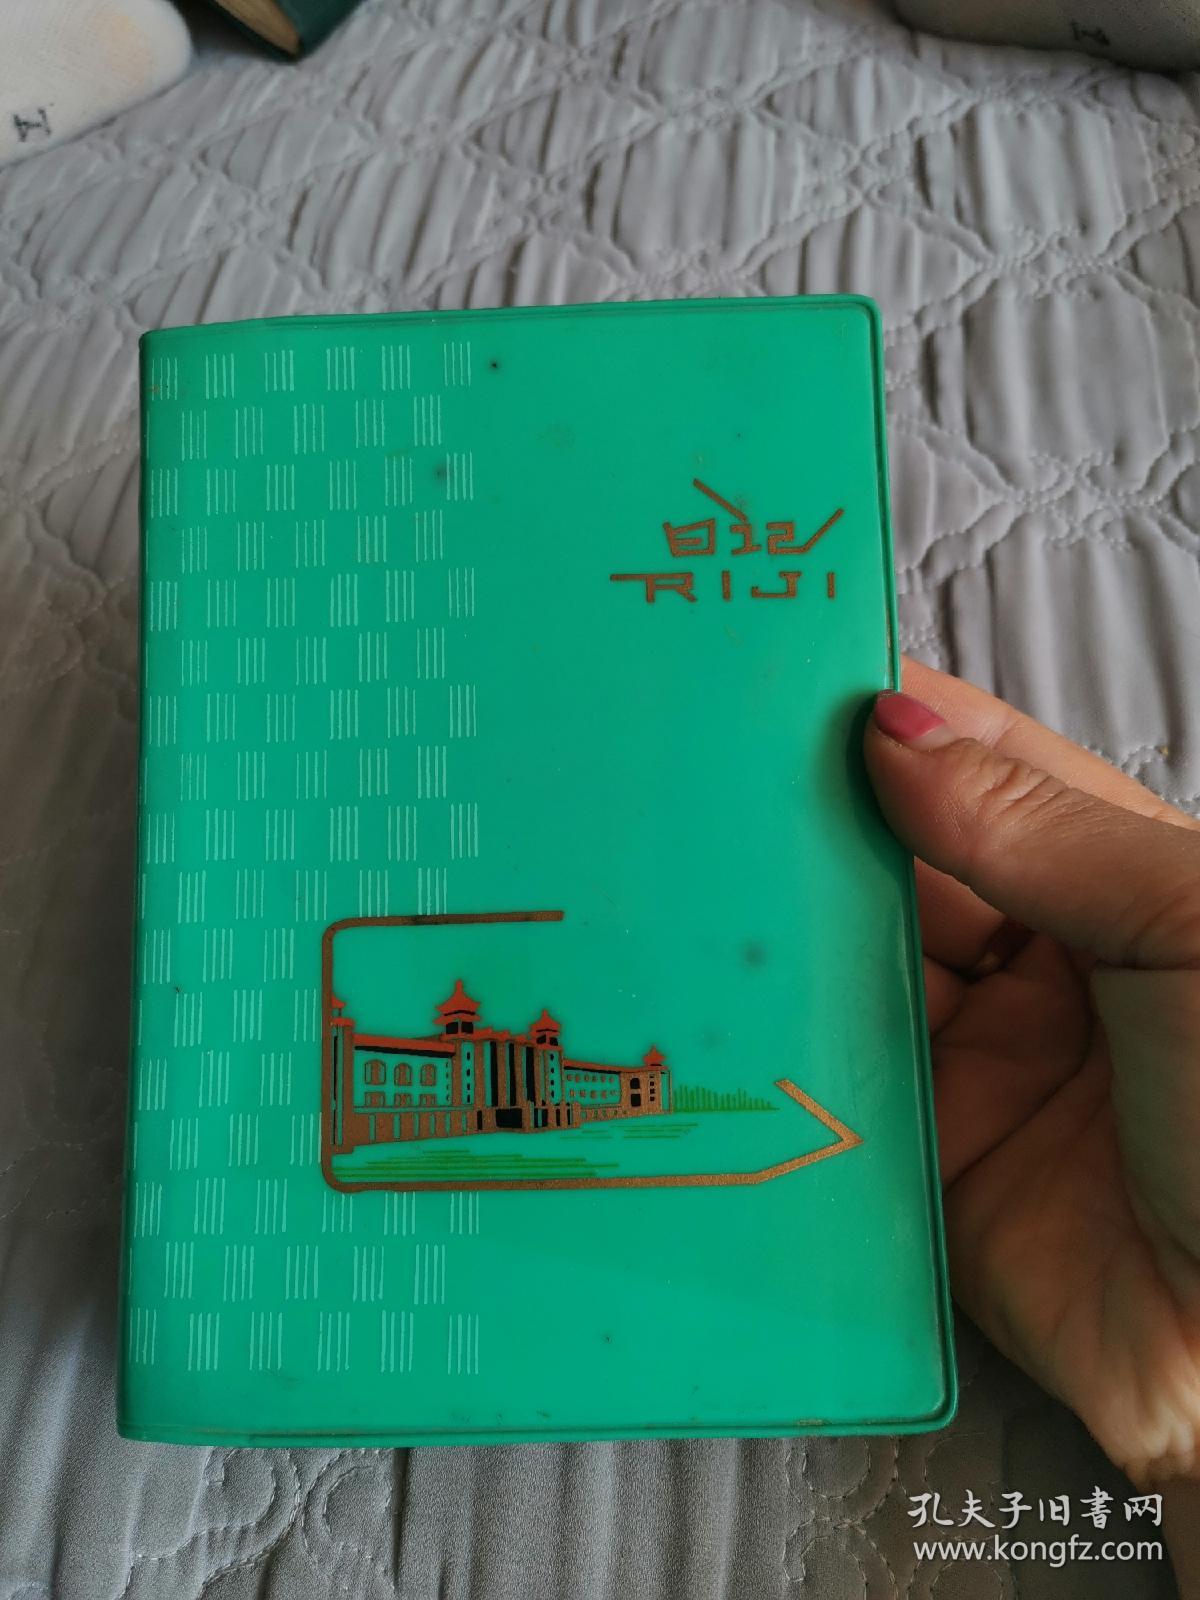 1978年北京建筑日记本